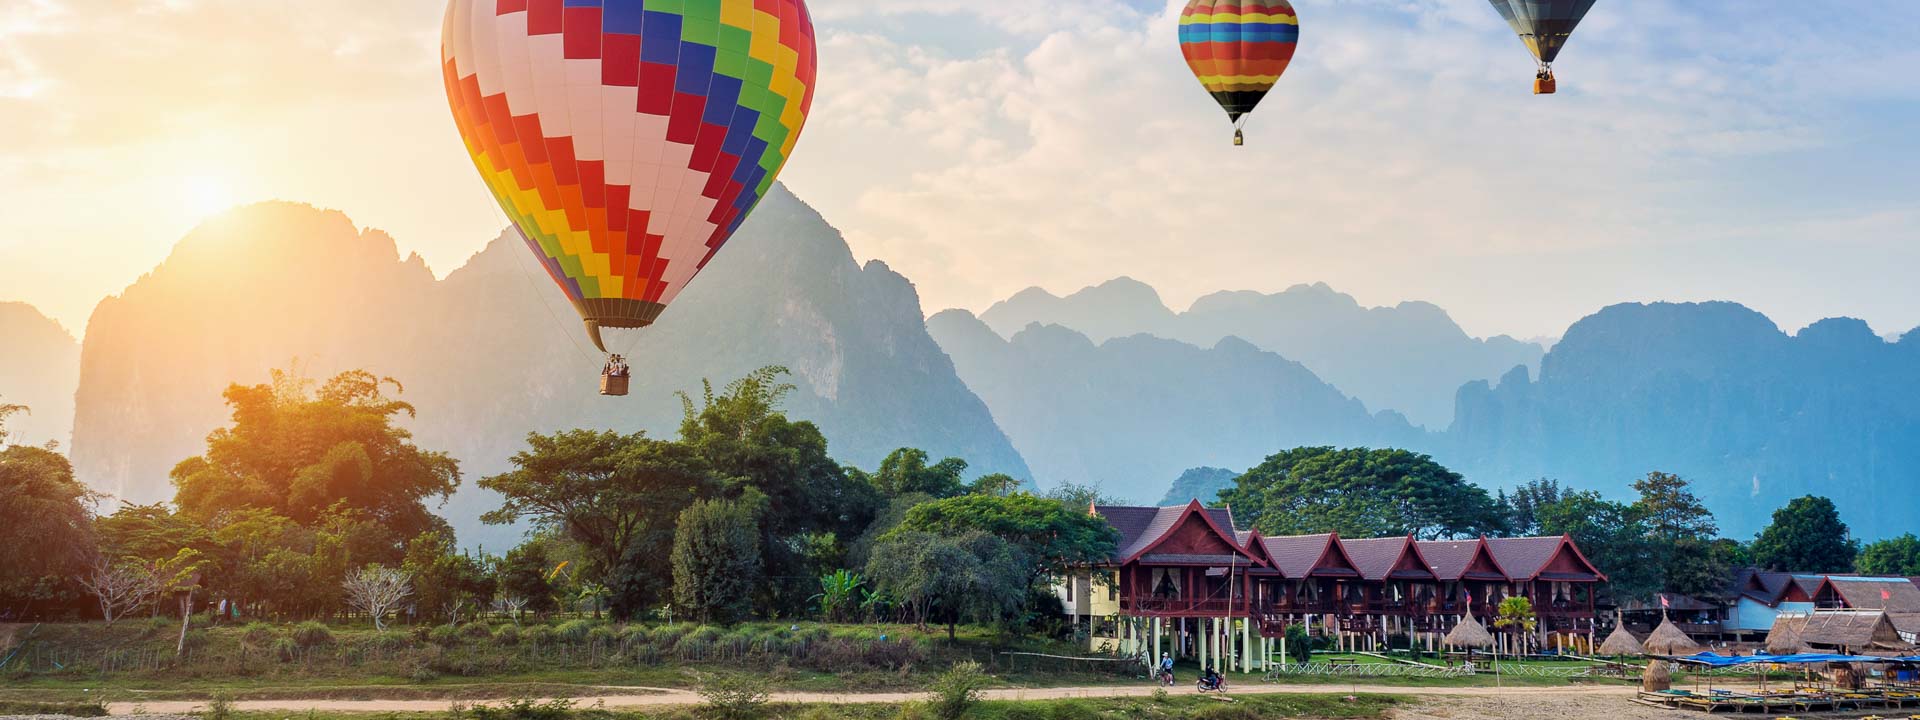 3 weeks Laos Cambodia Vietnam tour through culture lens